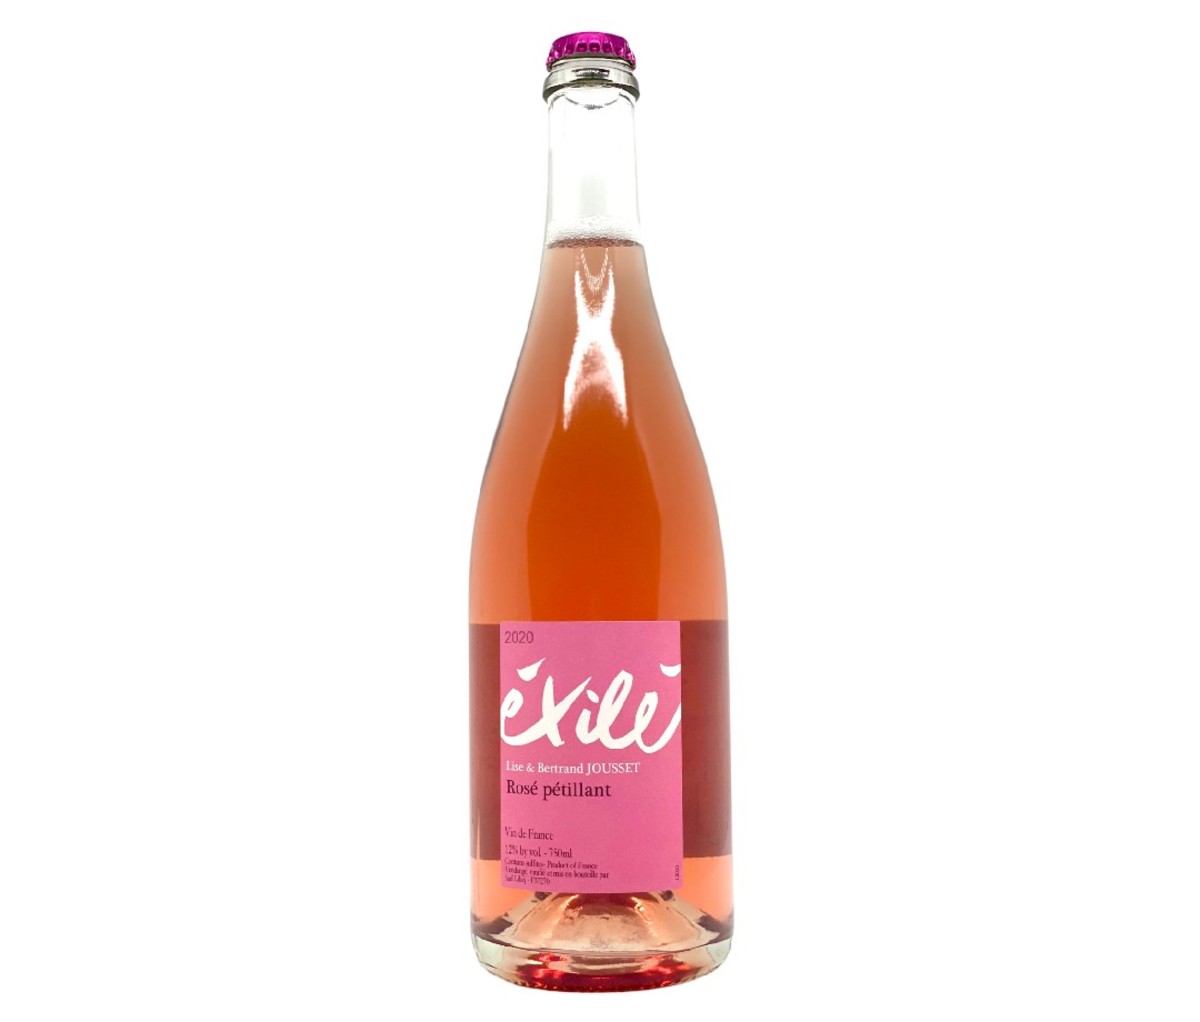 A bottle of Domaine Lise et Bertrand Jousset Pet Nat Exile Rose wine.